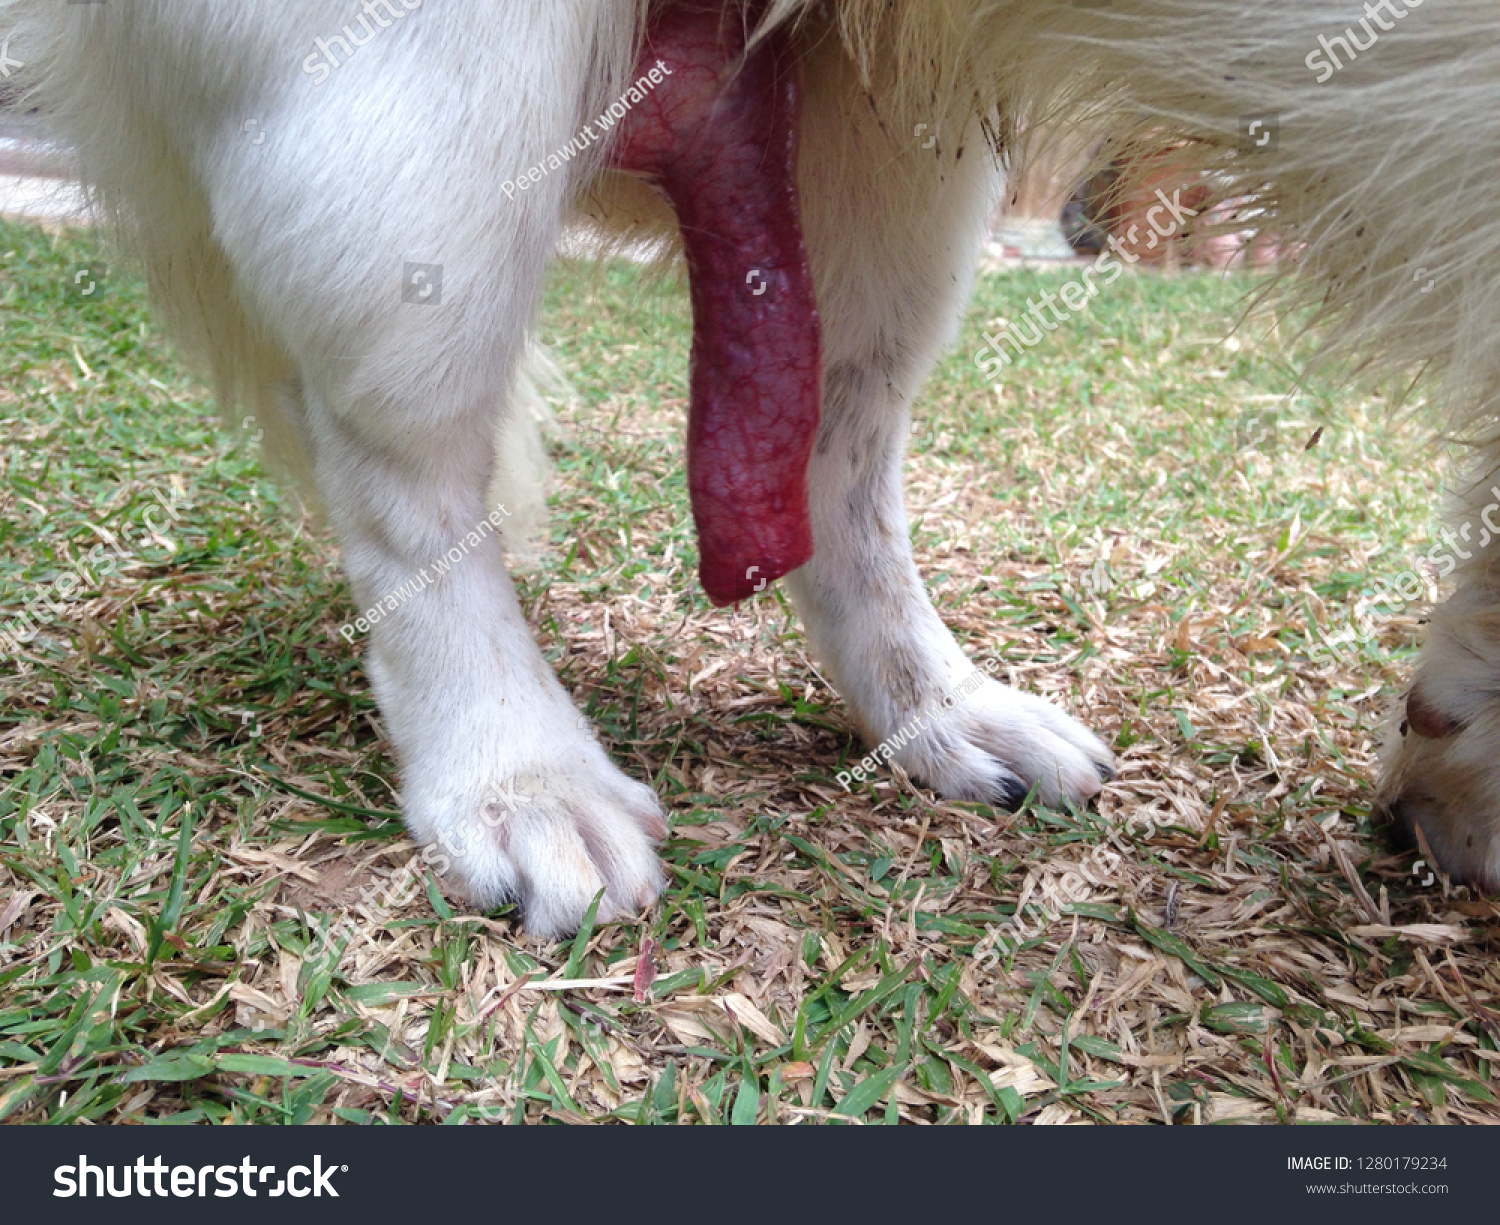 Big Dick Dog Stok Fotoğrafı 1280179234 Shutterstock.